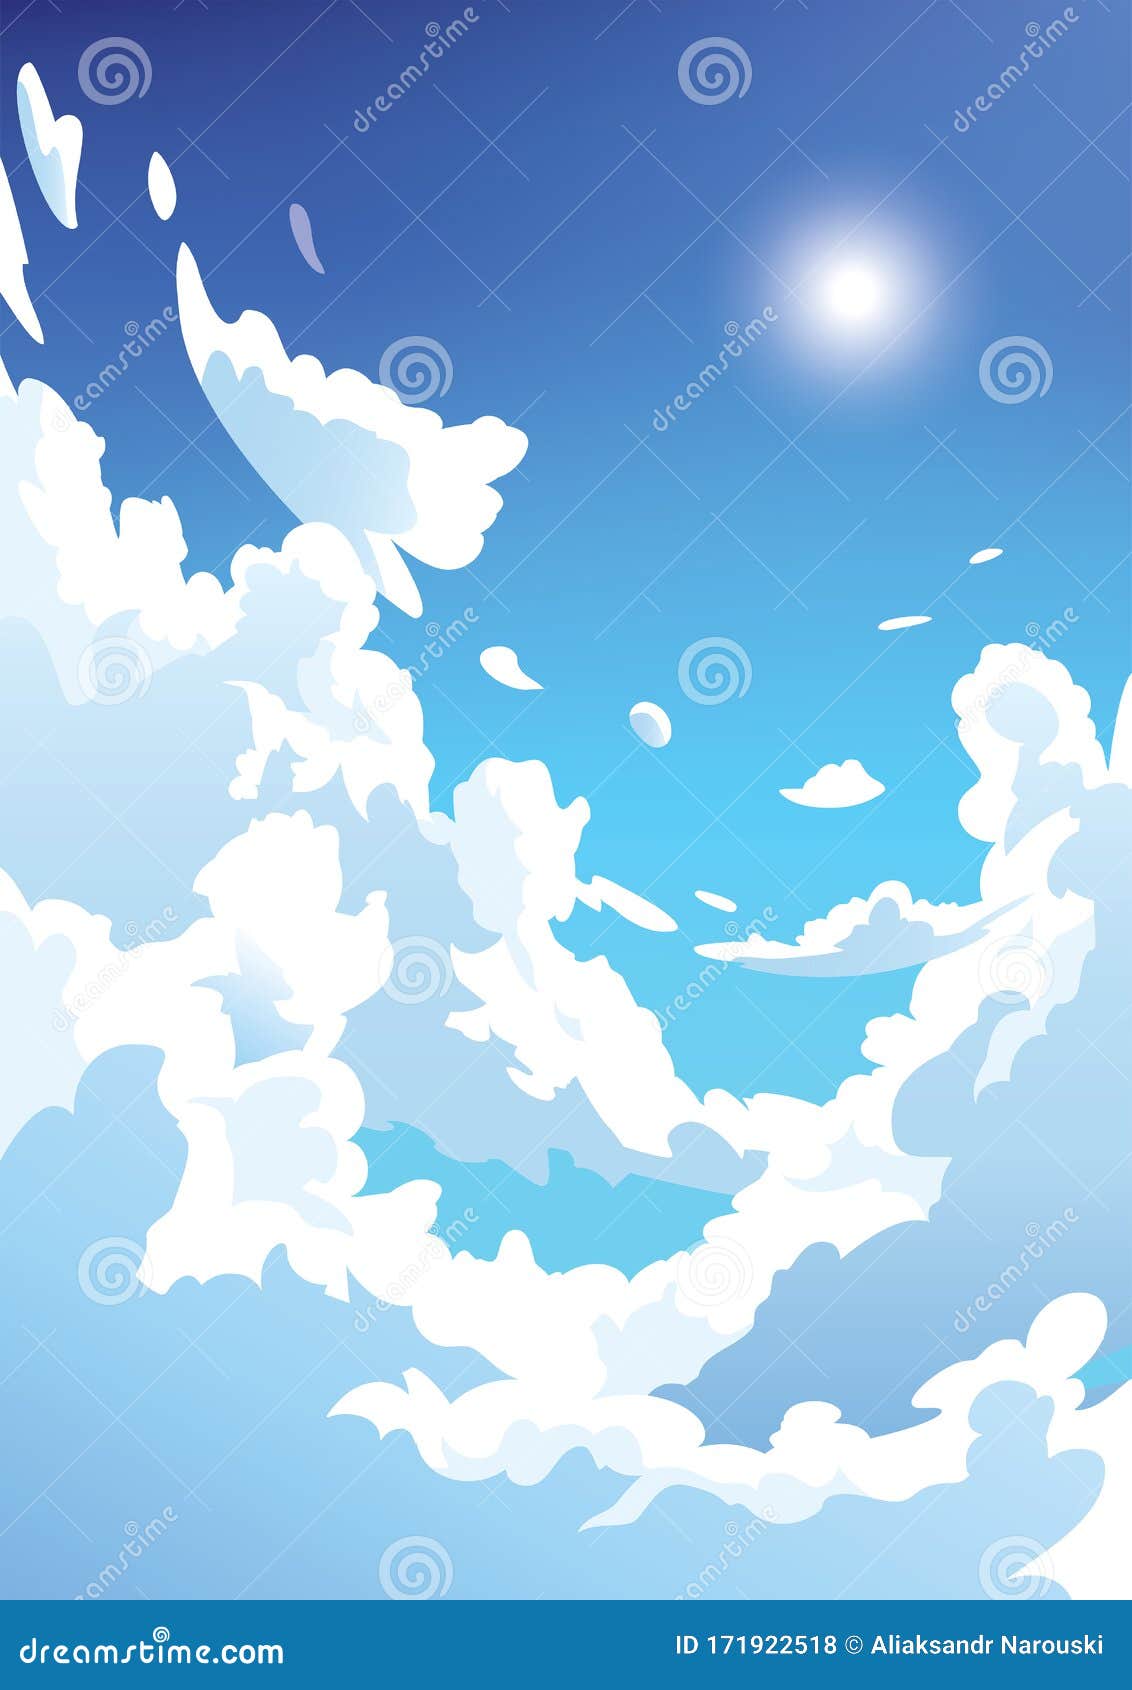 Hãy khám phá đám mây vector động dọc trên bầu trời xanh cùng phong cách anime đầy hấp dẫn. Hình ảnh này sẽ khiến cho bạn cảm thấy như đang lạc vào thế giới anime đầy màu sắc và tinh nhưng cũng không kém phần sống động. Bạn sẽ thật sự bị cuốn hút bởi sự động đậy của đám mây này!